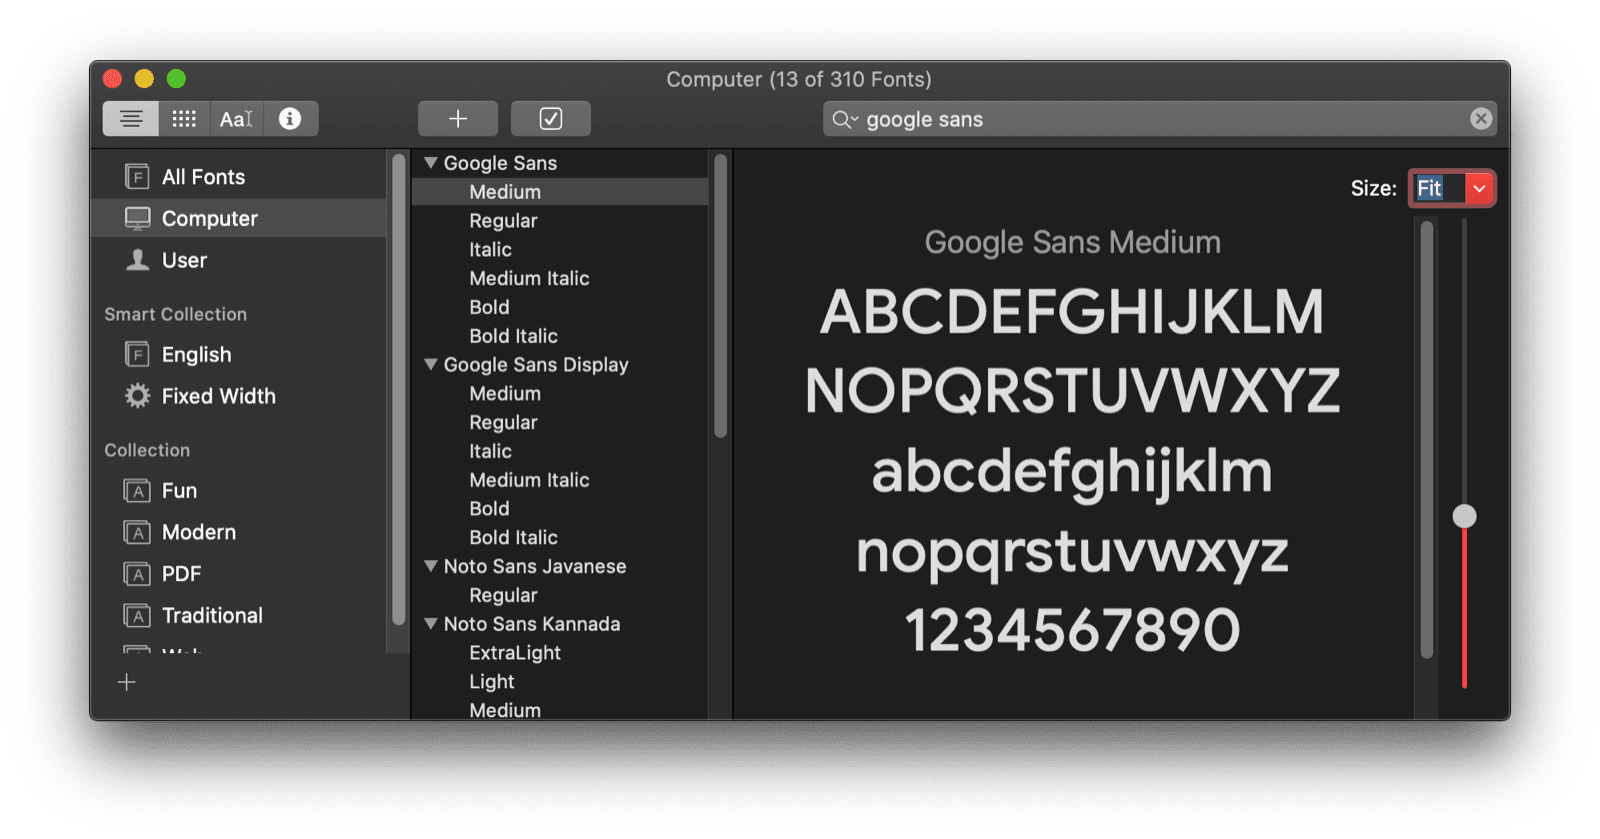 แอป macOS Font Book แสดงตัวอย่างแบบอักษร Google Sans